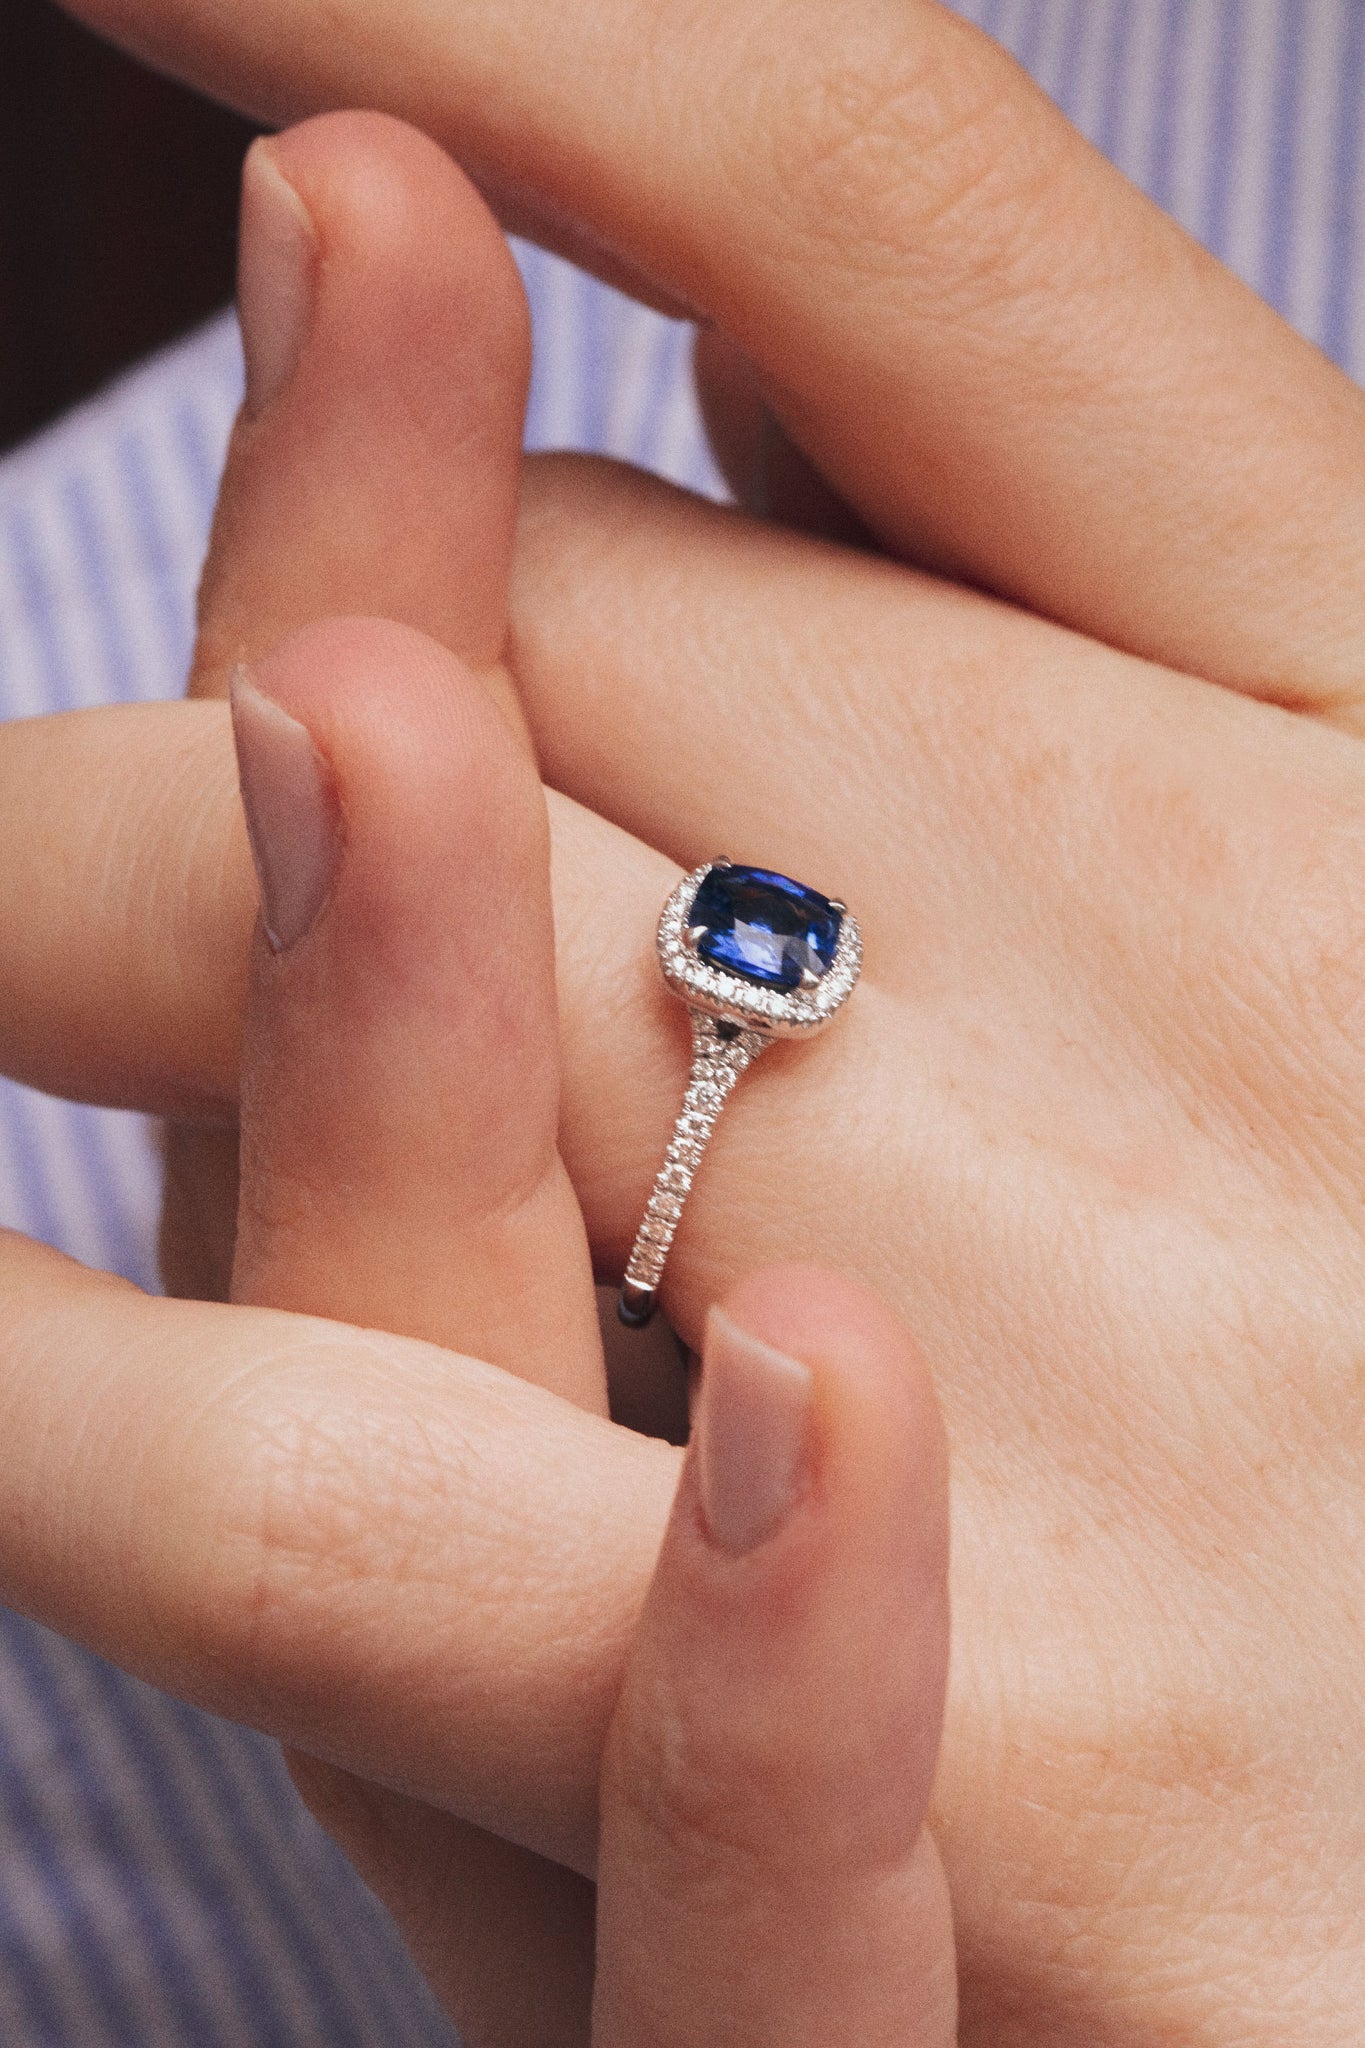 Photo zoomé des mains d'une femme qui s'entrelacent. Une bague en saphir bleu habille son doigt d'un glamour extrême. Le halo de diamants blancs et du pavage sur la monture magnifient l'éclat bleu de la pierre centrale..